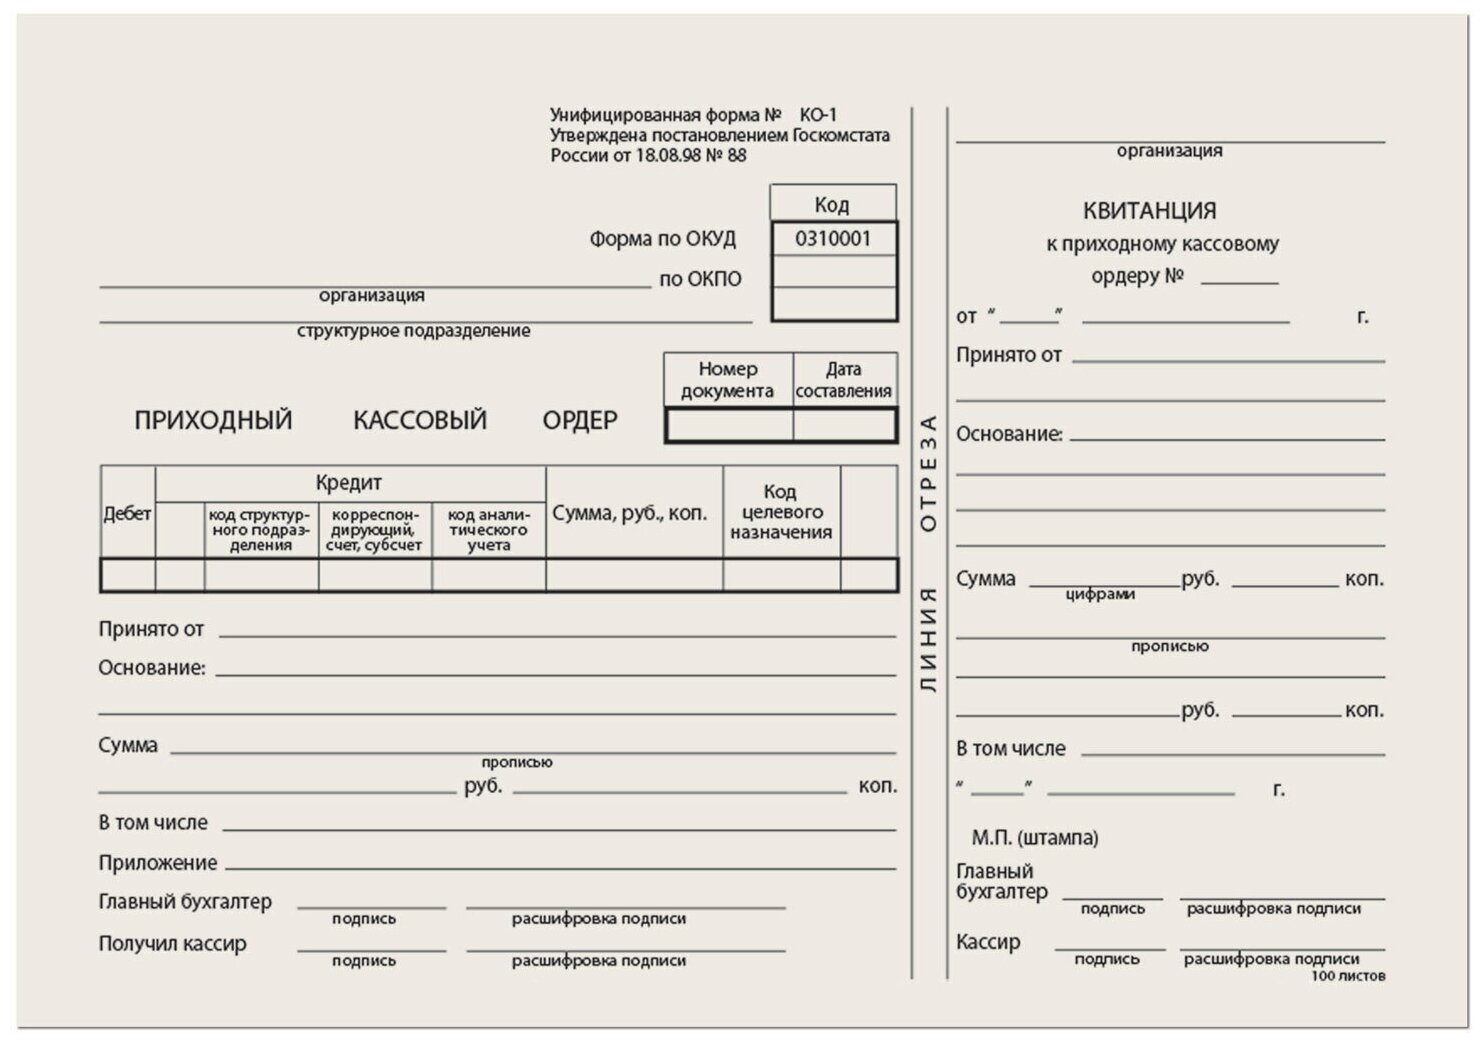 Бланк бухгалтерский типографский "Приходно-кассовый ордер", А5 (138х197 мм), склейка 100 шт, 130004 - 1 шт.